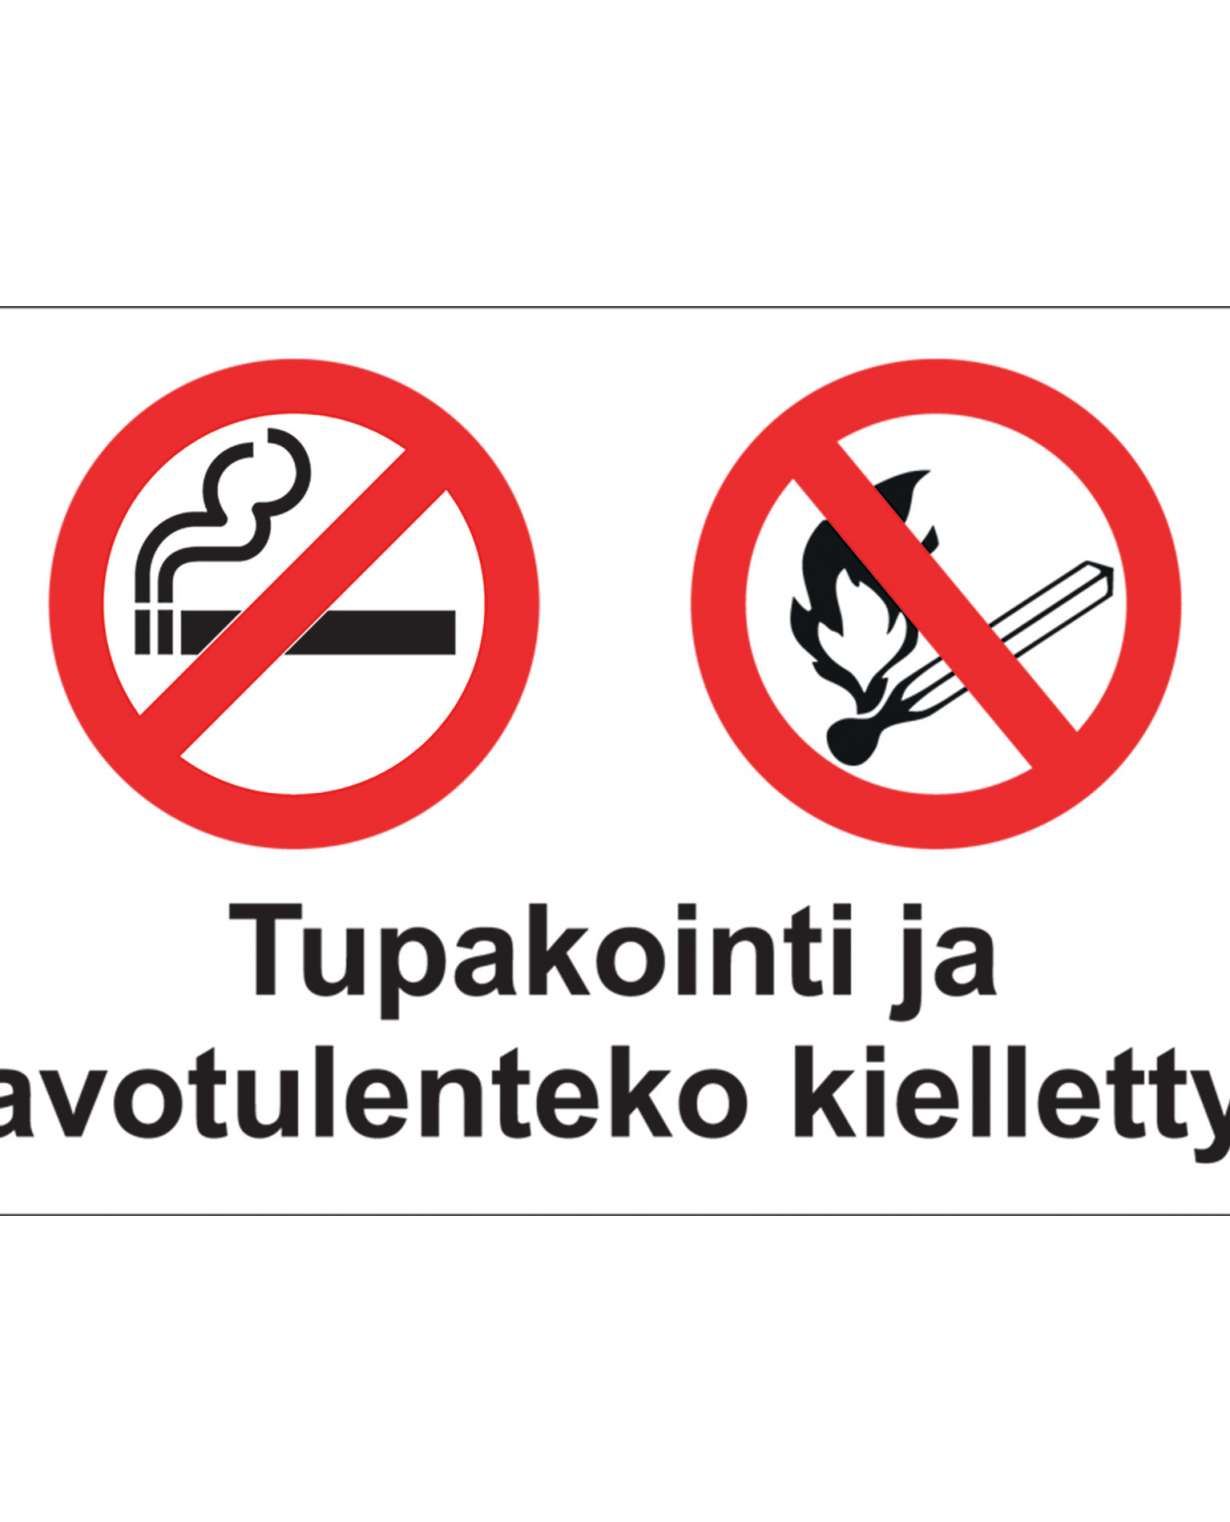 Tupakointi ja avotulen teko kielletty, Muovi 1mm, 400x300 mm